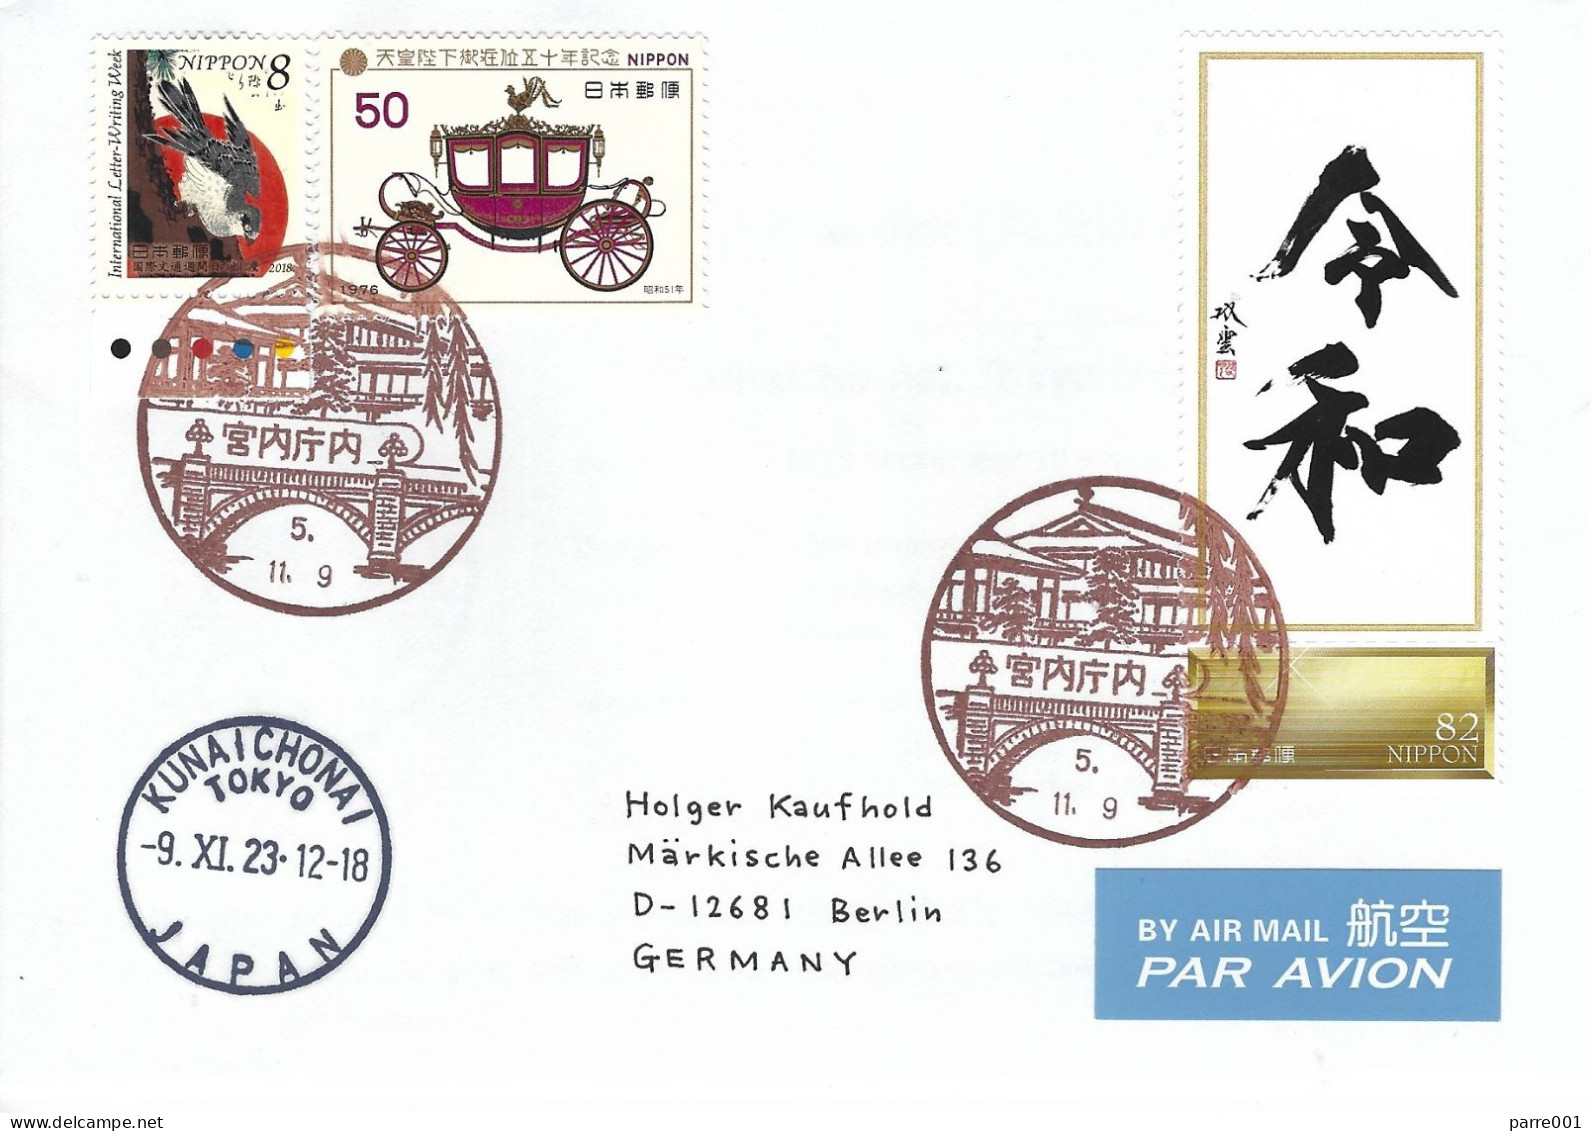 Japan 2023 Tokyo Falcon Reiwa Calligraphy Emperor Naruhito Imperial Palace Postmark Cover - Águilas & Aves De Presa